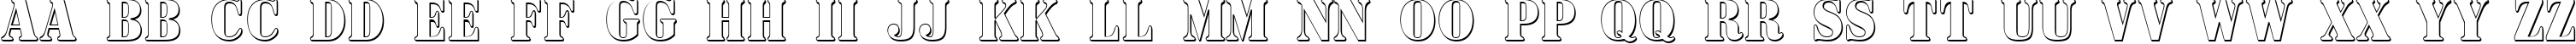 Пример написания английского алфавита шрифтом a_SignboardTitulNrSh